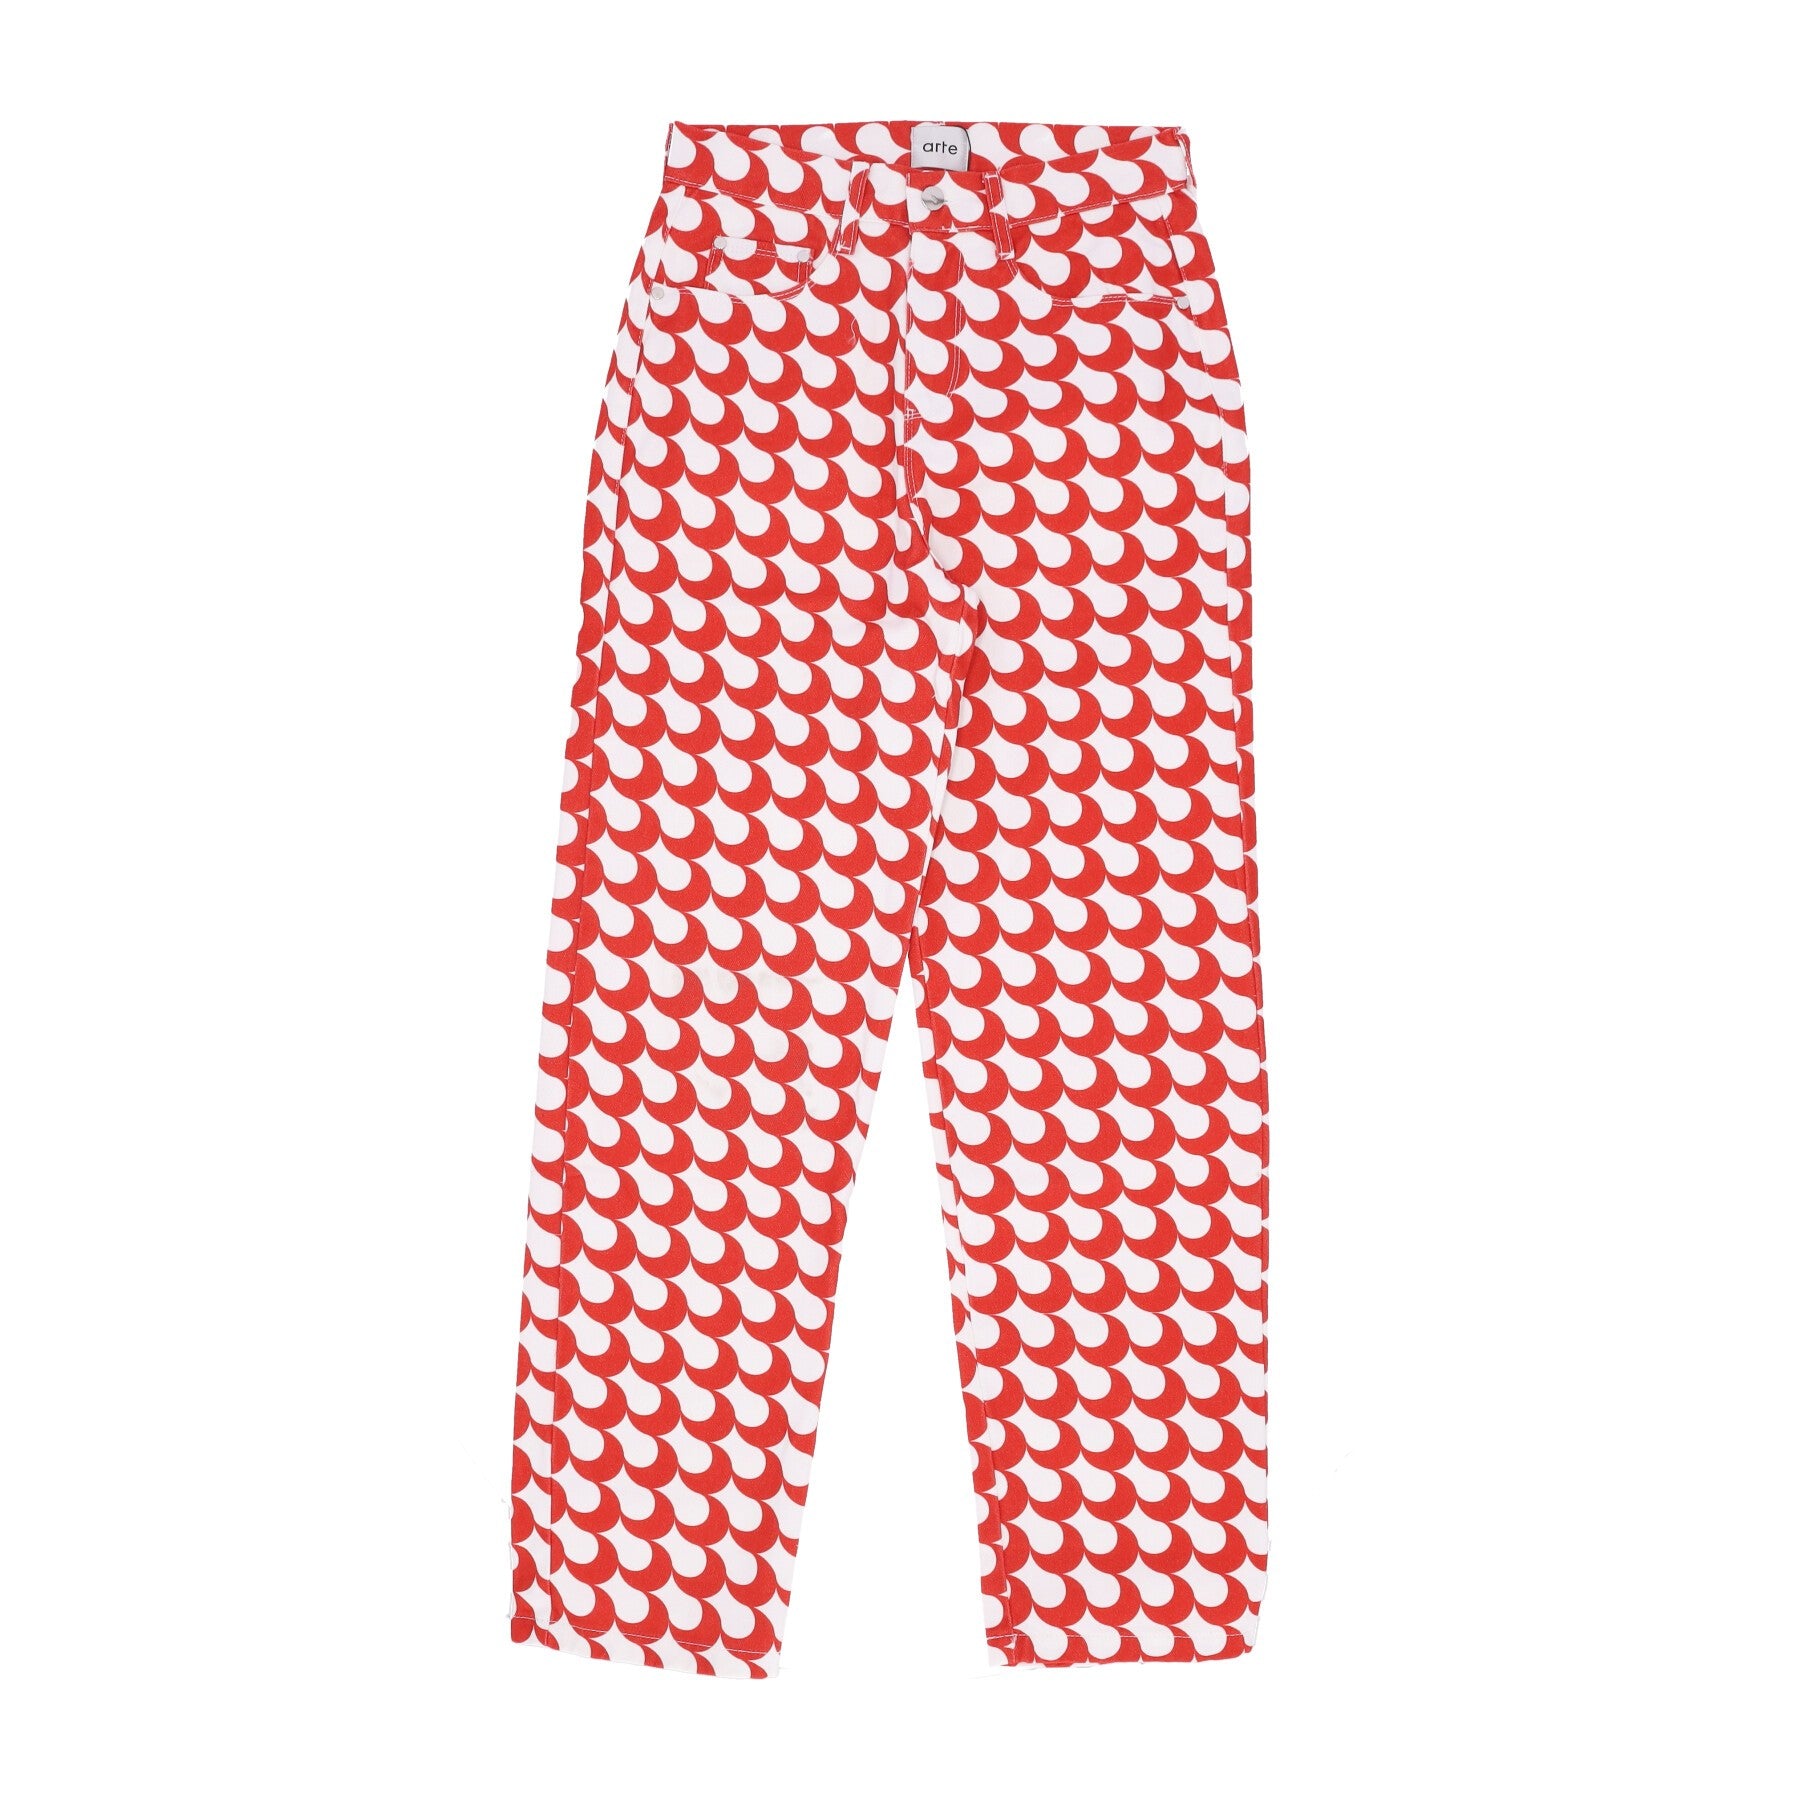 Paul Bau Print Pant Red/white Men's Long Trousers